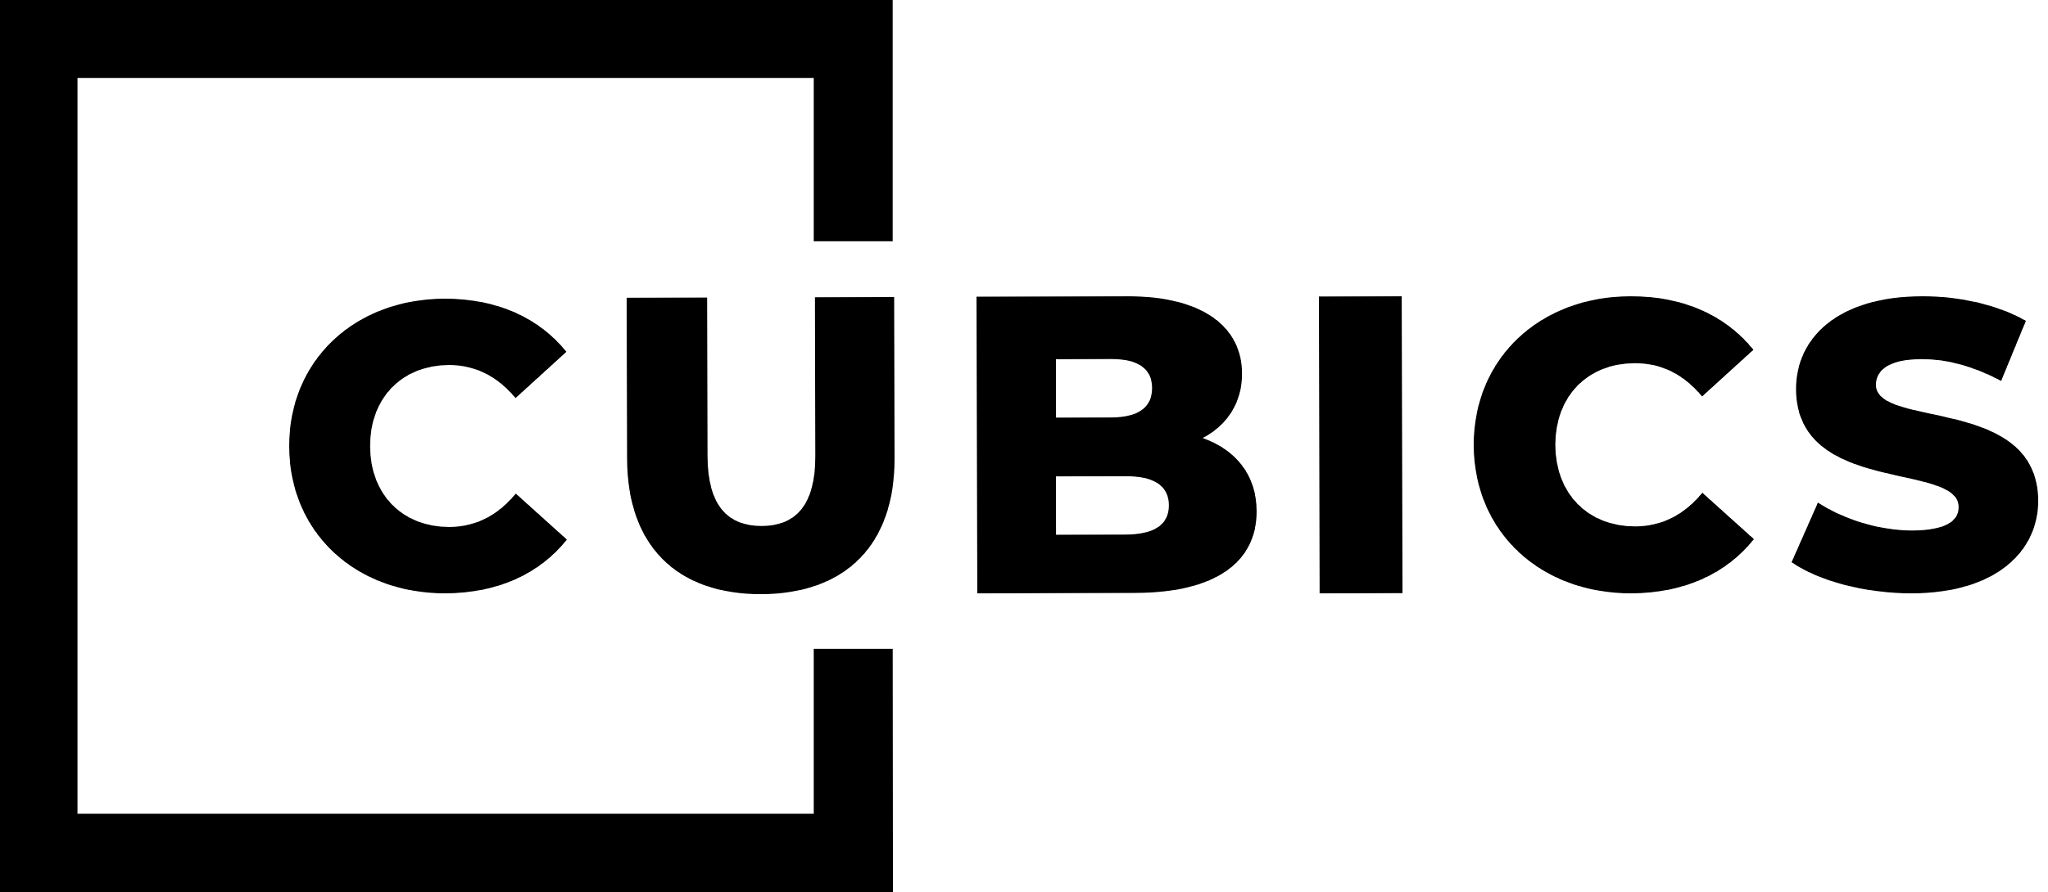 P-CUBICS (logo)